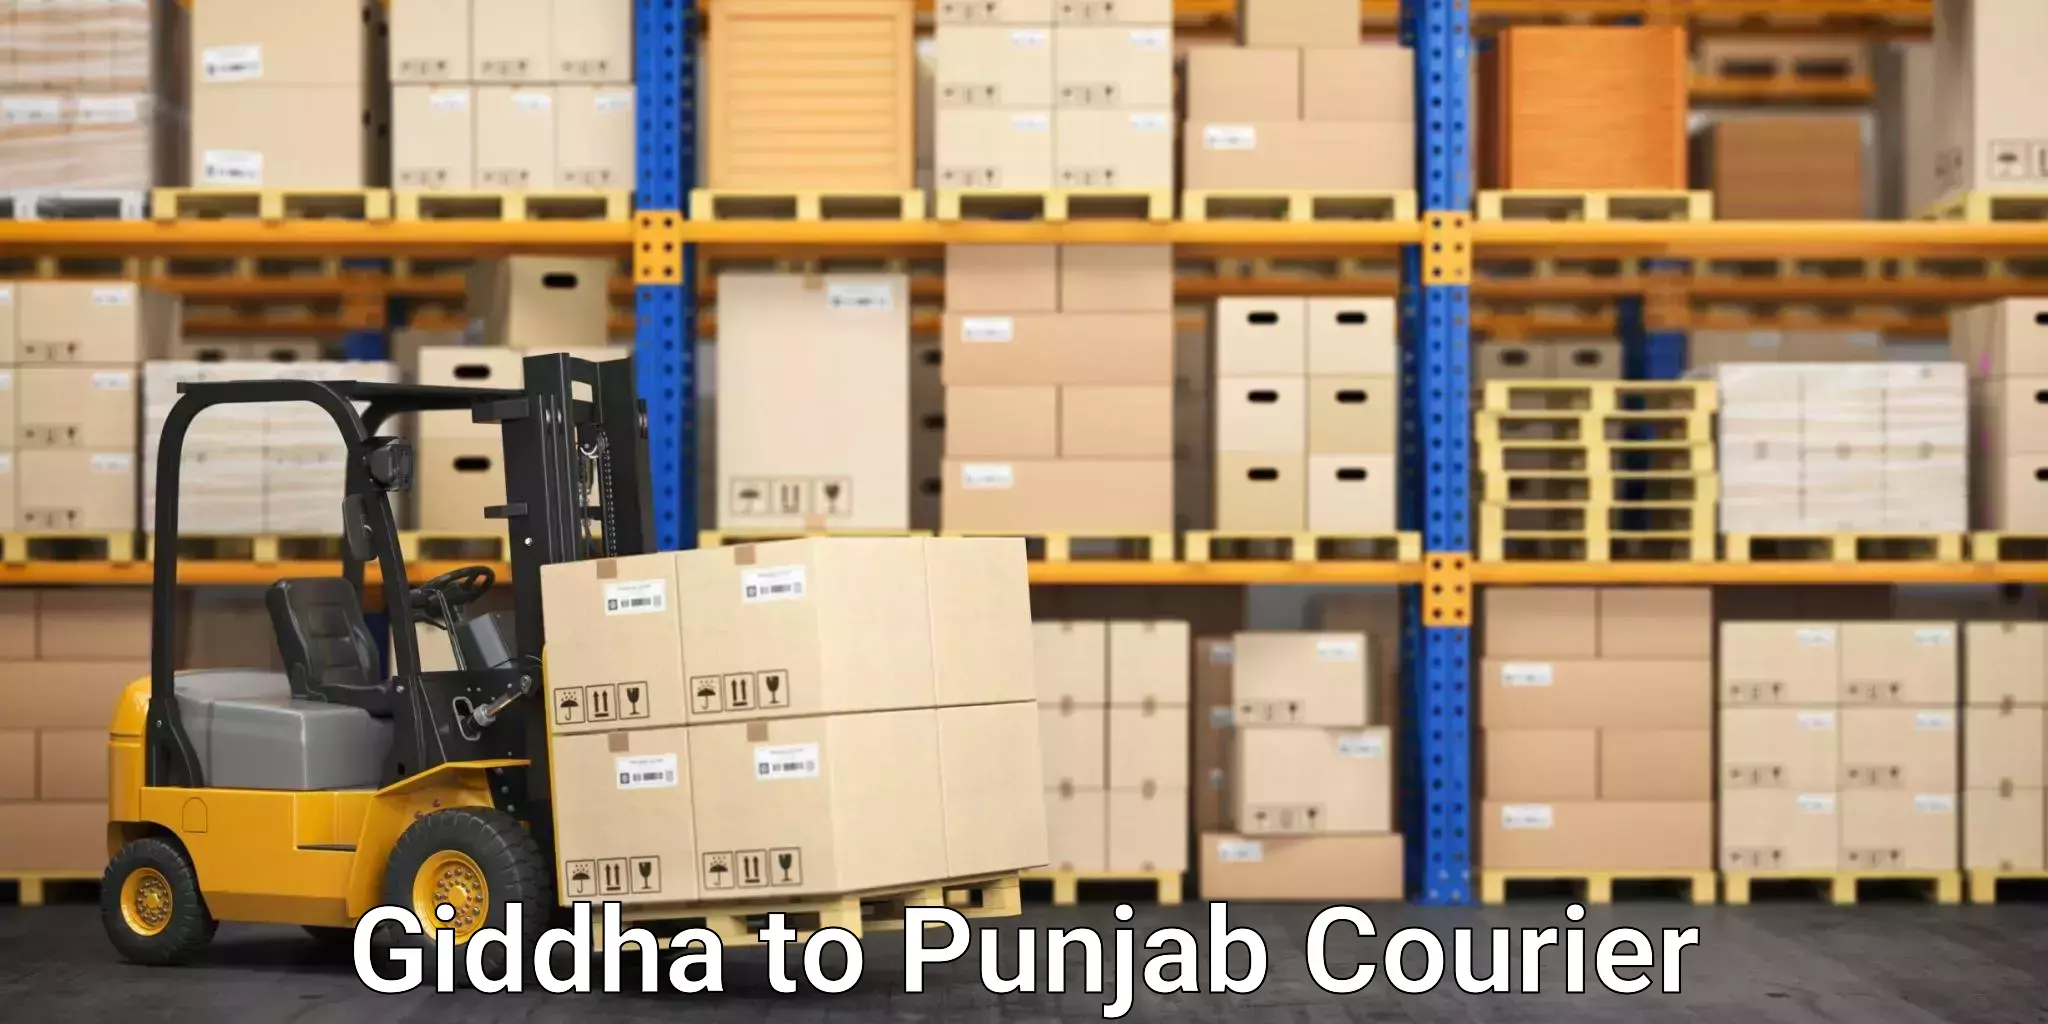 Furniture transport experts Giddha to Punjab